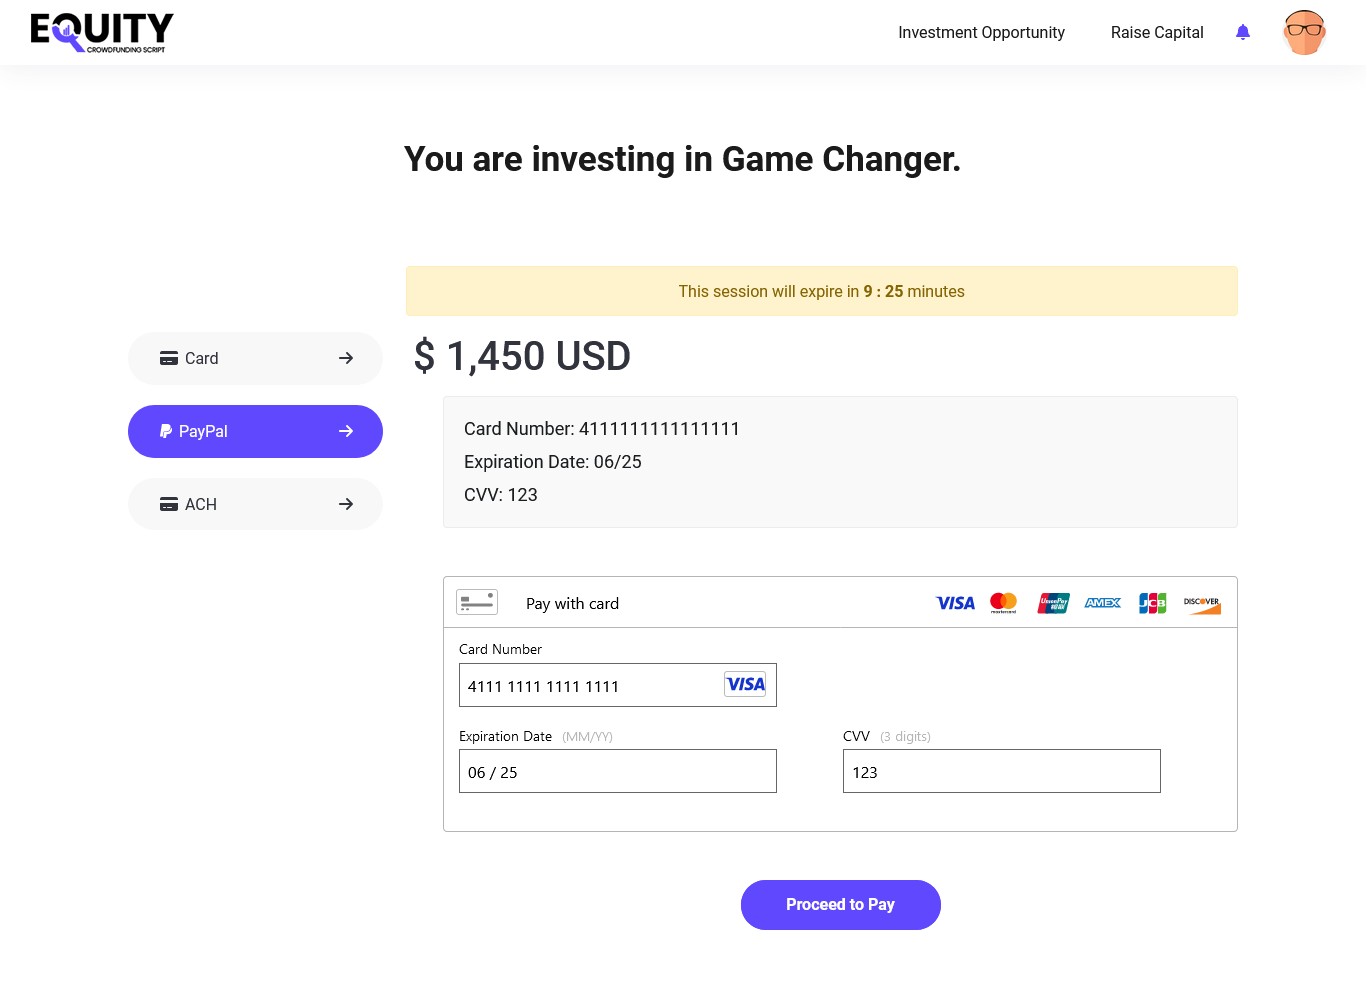 Voer PayPal-gegevens in voor het uitvoeren van de investeringsbetaling in de crowdfundingsoftware.